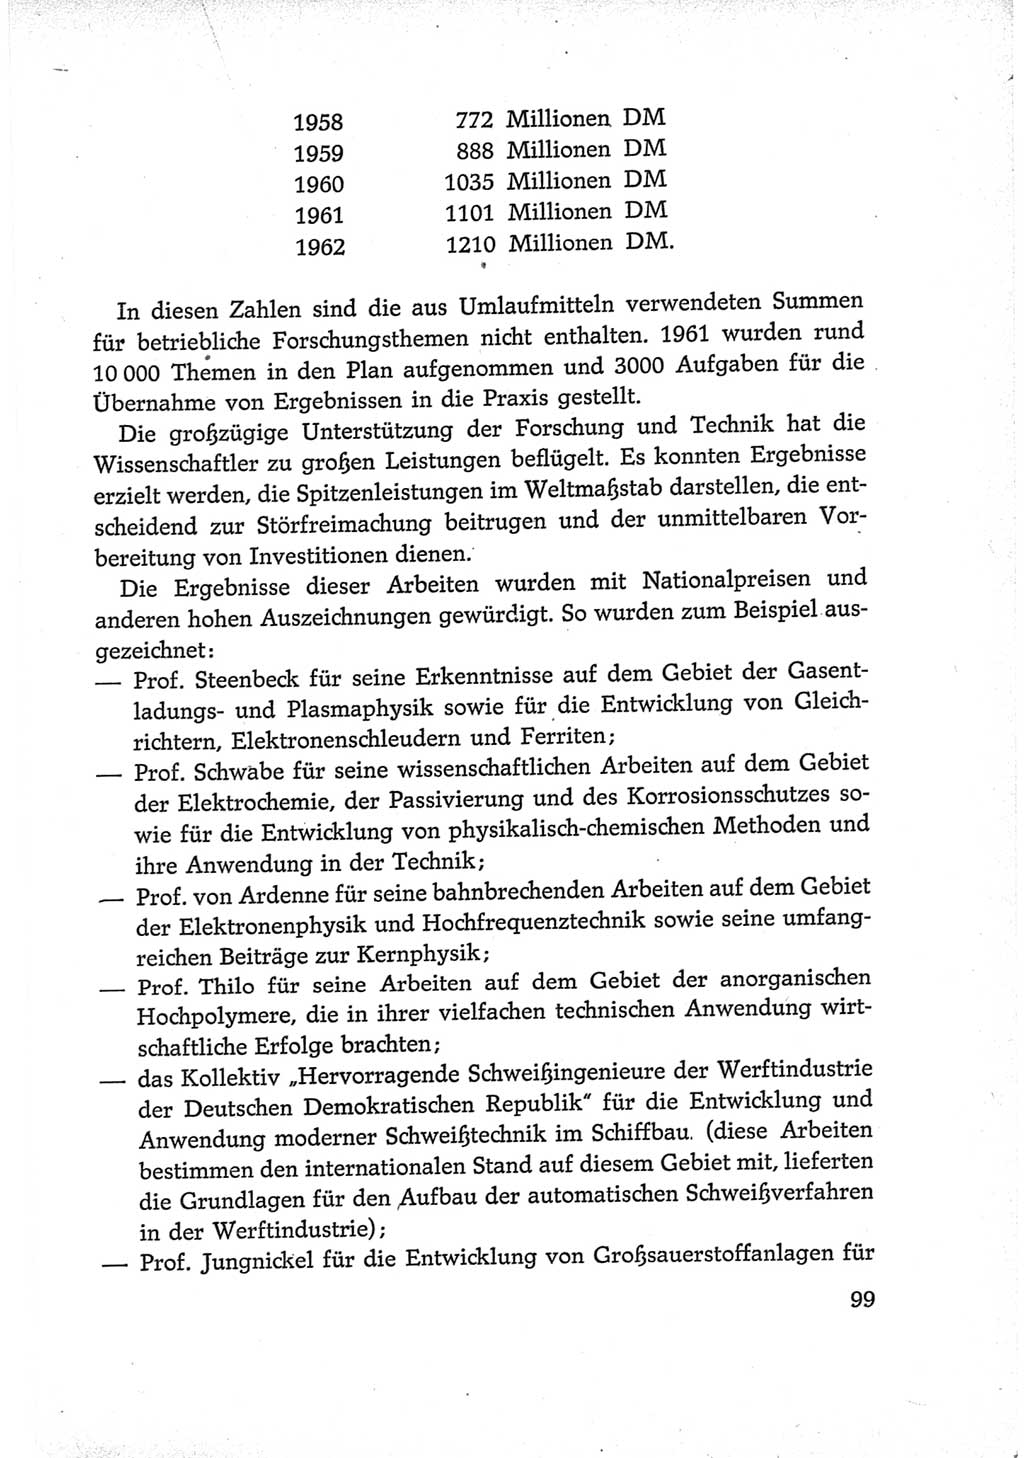 Protokoll der Verhandlungen des Ⅵ. Parteitages der Sozialistischen Einheitspartei Deutschlands (SED) [Deutsche Demokratische Republik (DDR)] 1963, Band Ⅳ, Seite 99 (Prot. Verh. Ⅵ. PT SED DDR 1963, Bd. Ⅳ, S. 99)